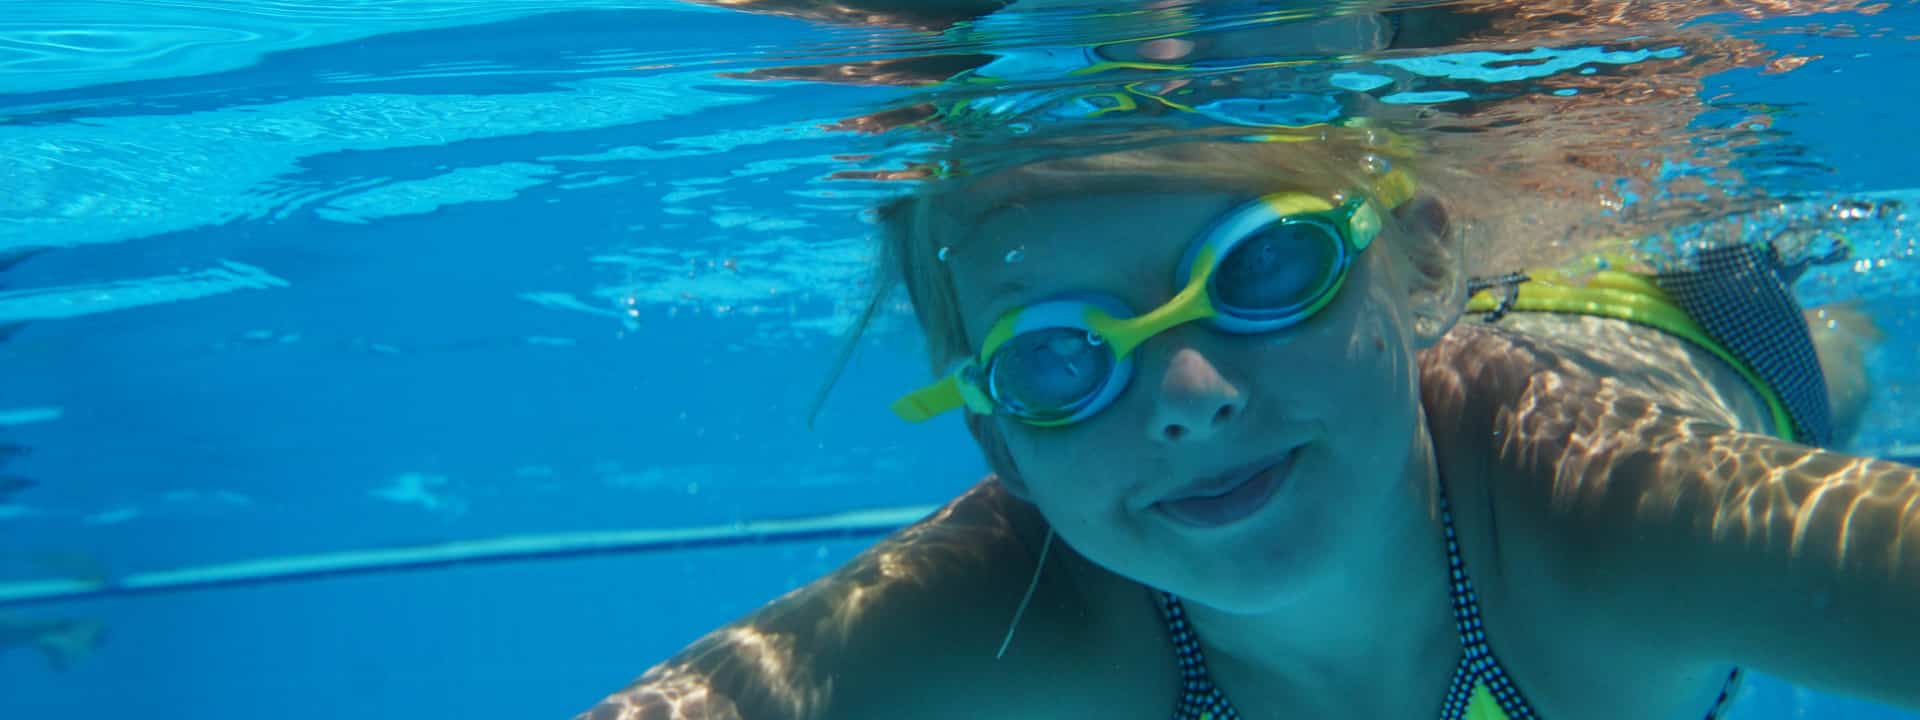 enfant-nage-dans-une-piscine-avec-bonnet-et-lunettes